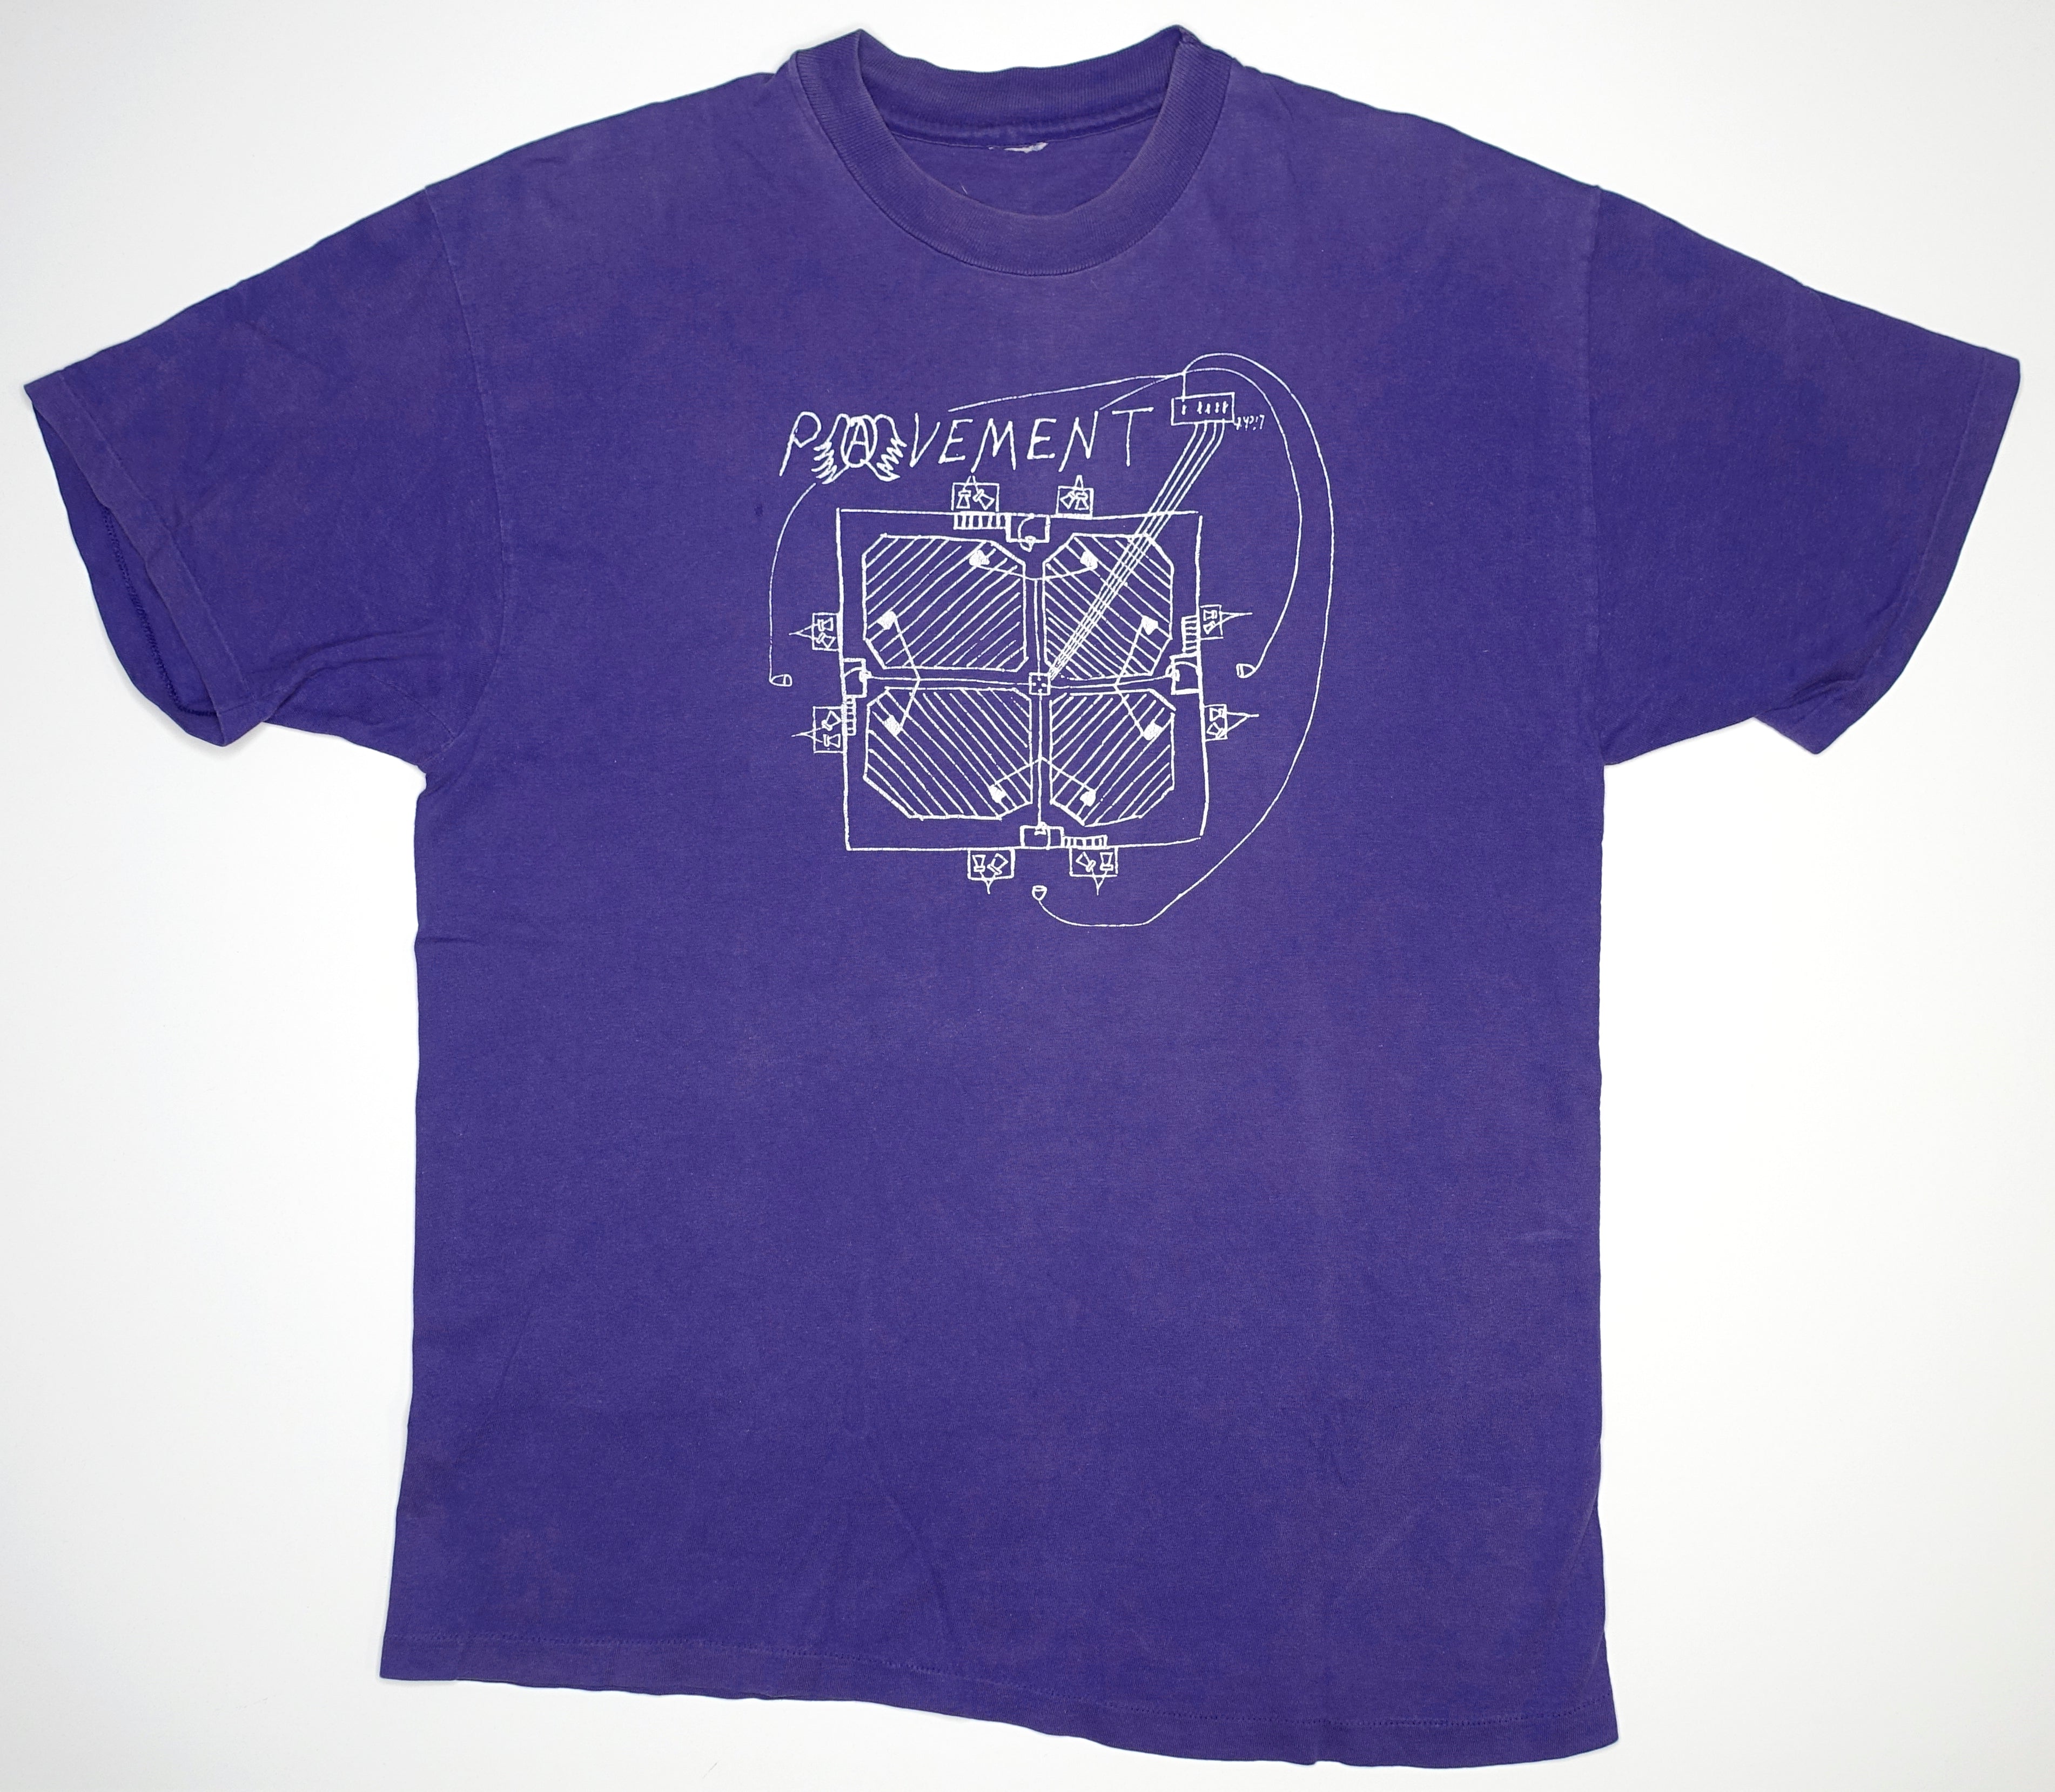 Pavement - Schematics 90's Tour Shirt Size XL / Large